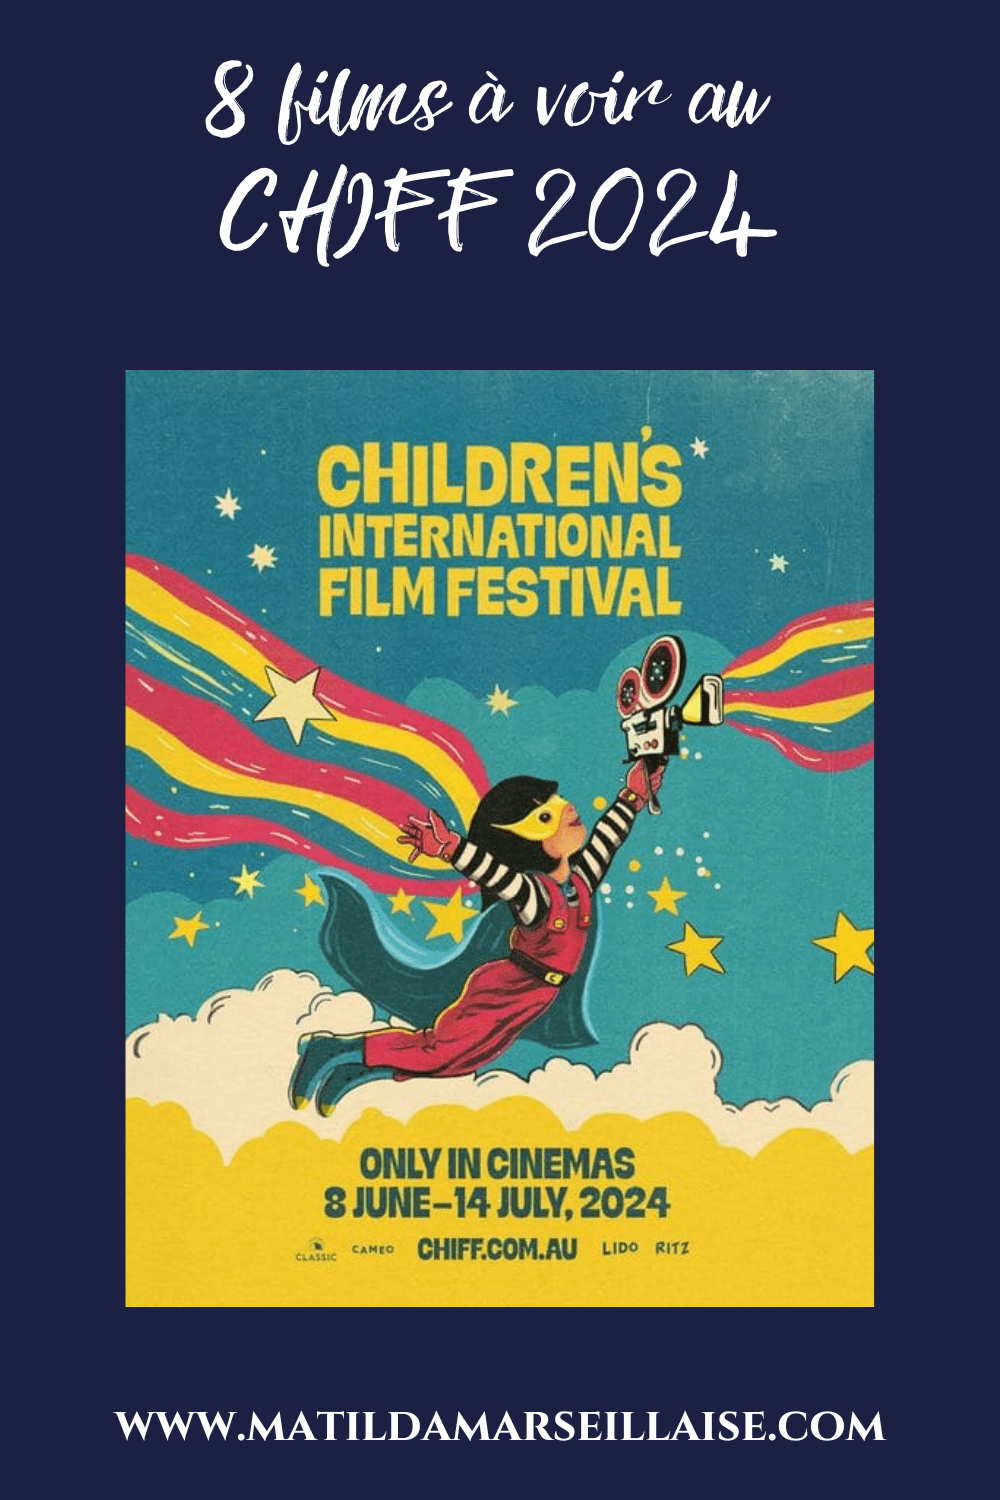 Le CHIFF 2024 est arrivé: un festival du film pour enfants avec de nombreux films français